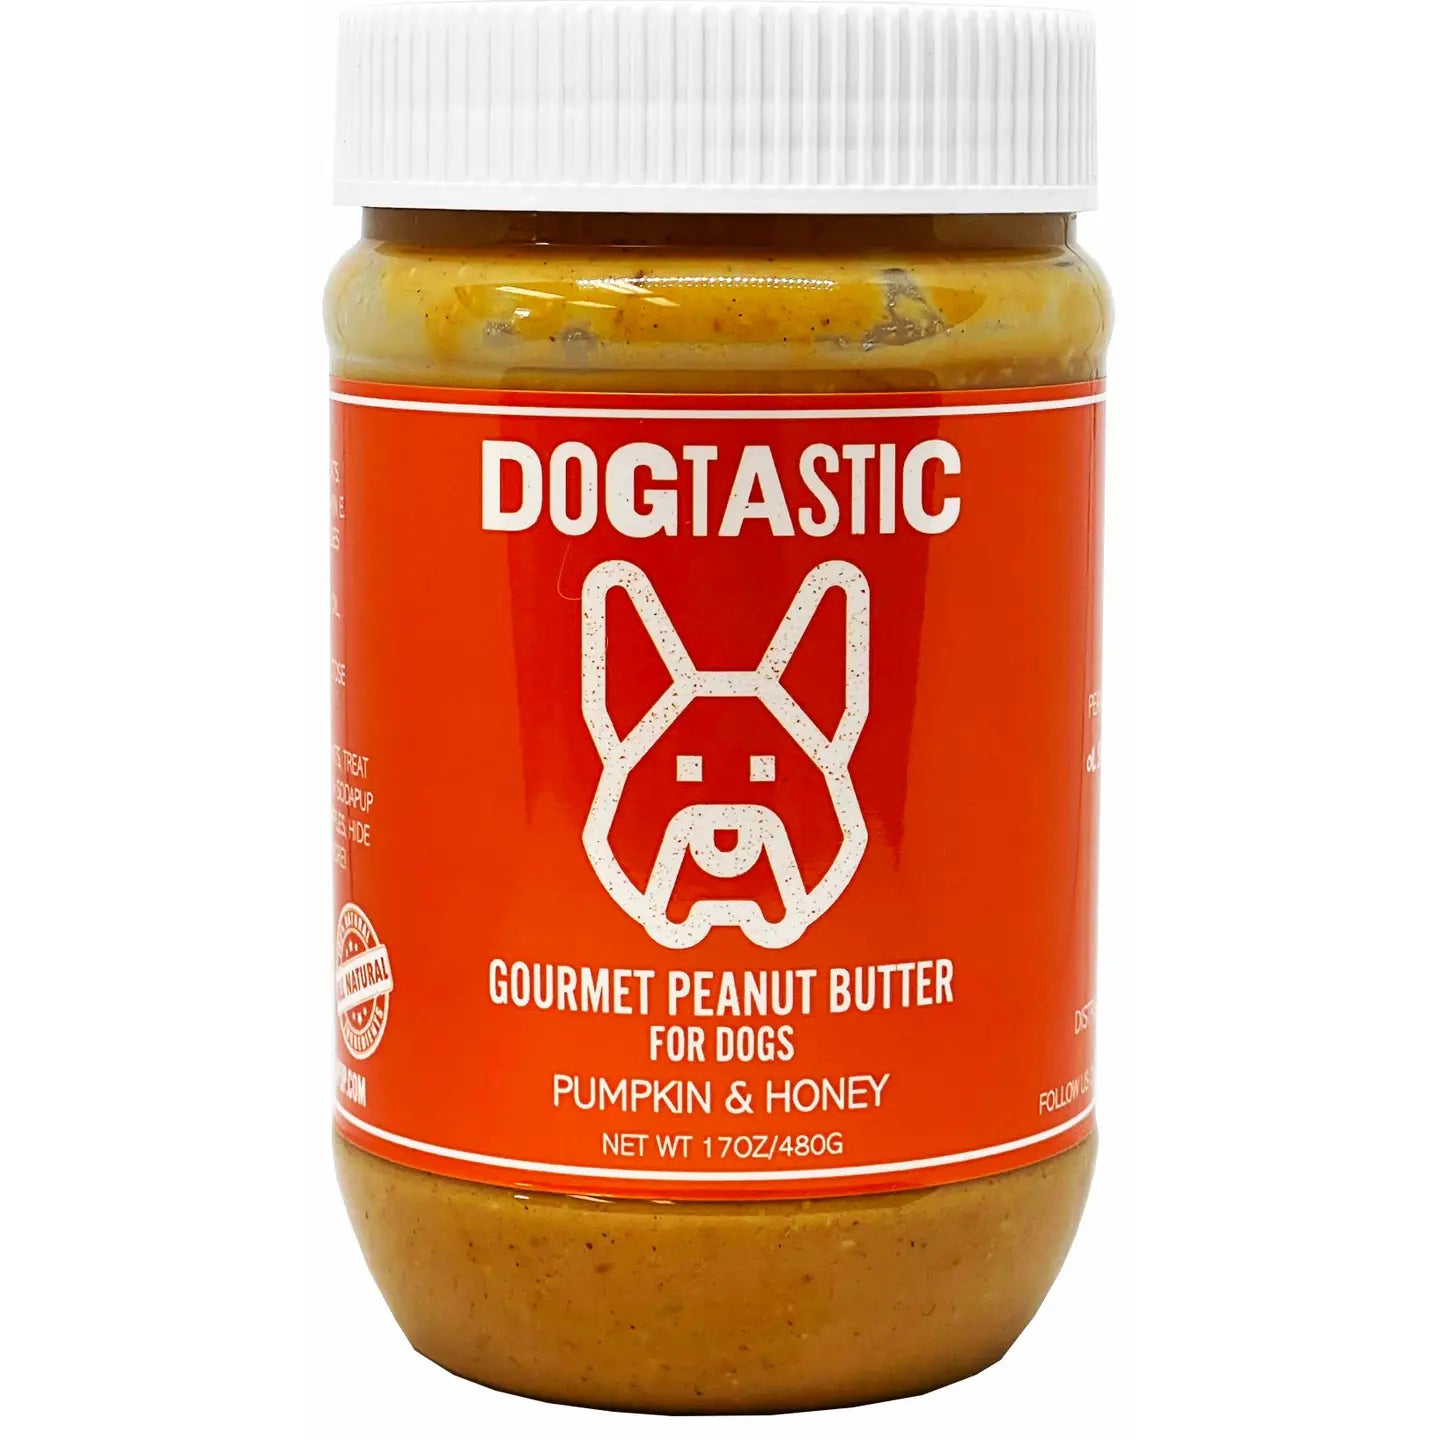 Dogtastic Gourmet Peanut Butter For Dogs - Pumpkin & Honey Flavor